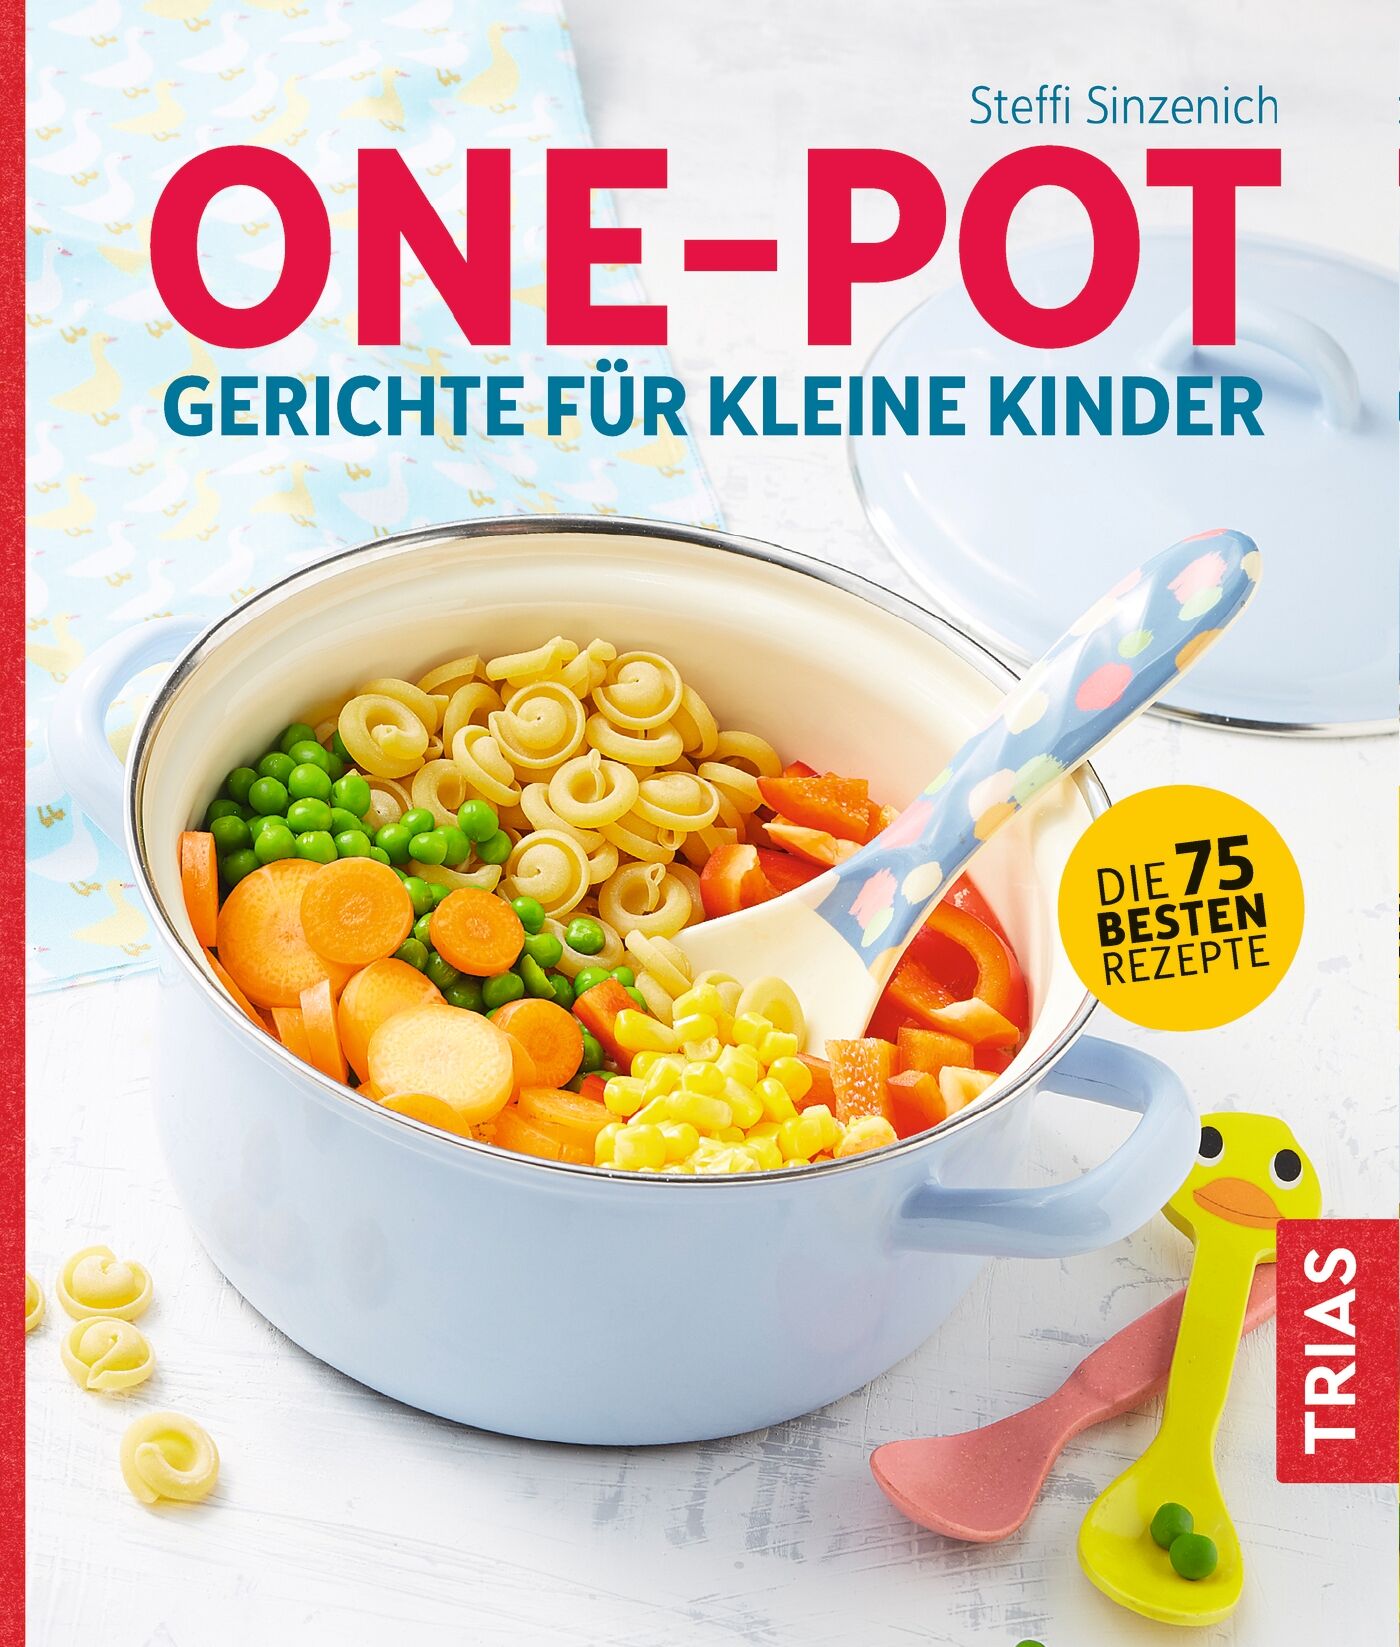 One-Pot - Gerichte für kleine Kinder, 9783432107790